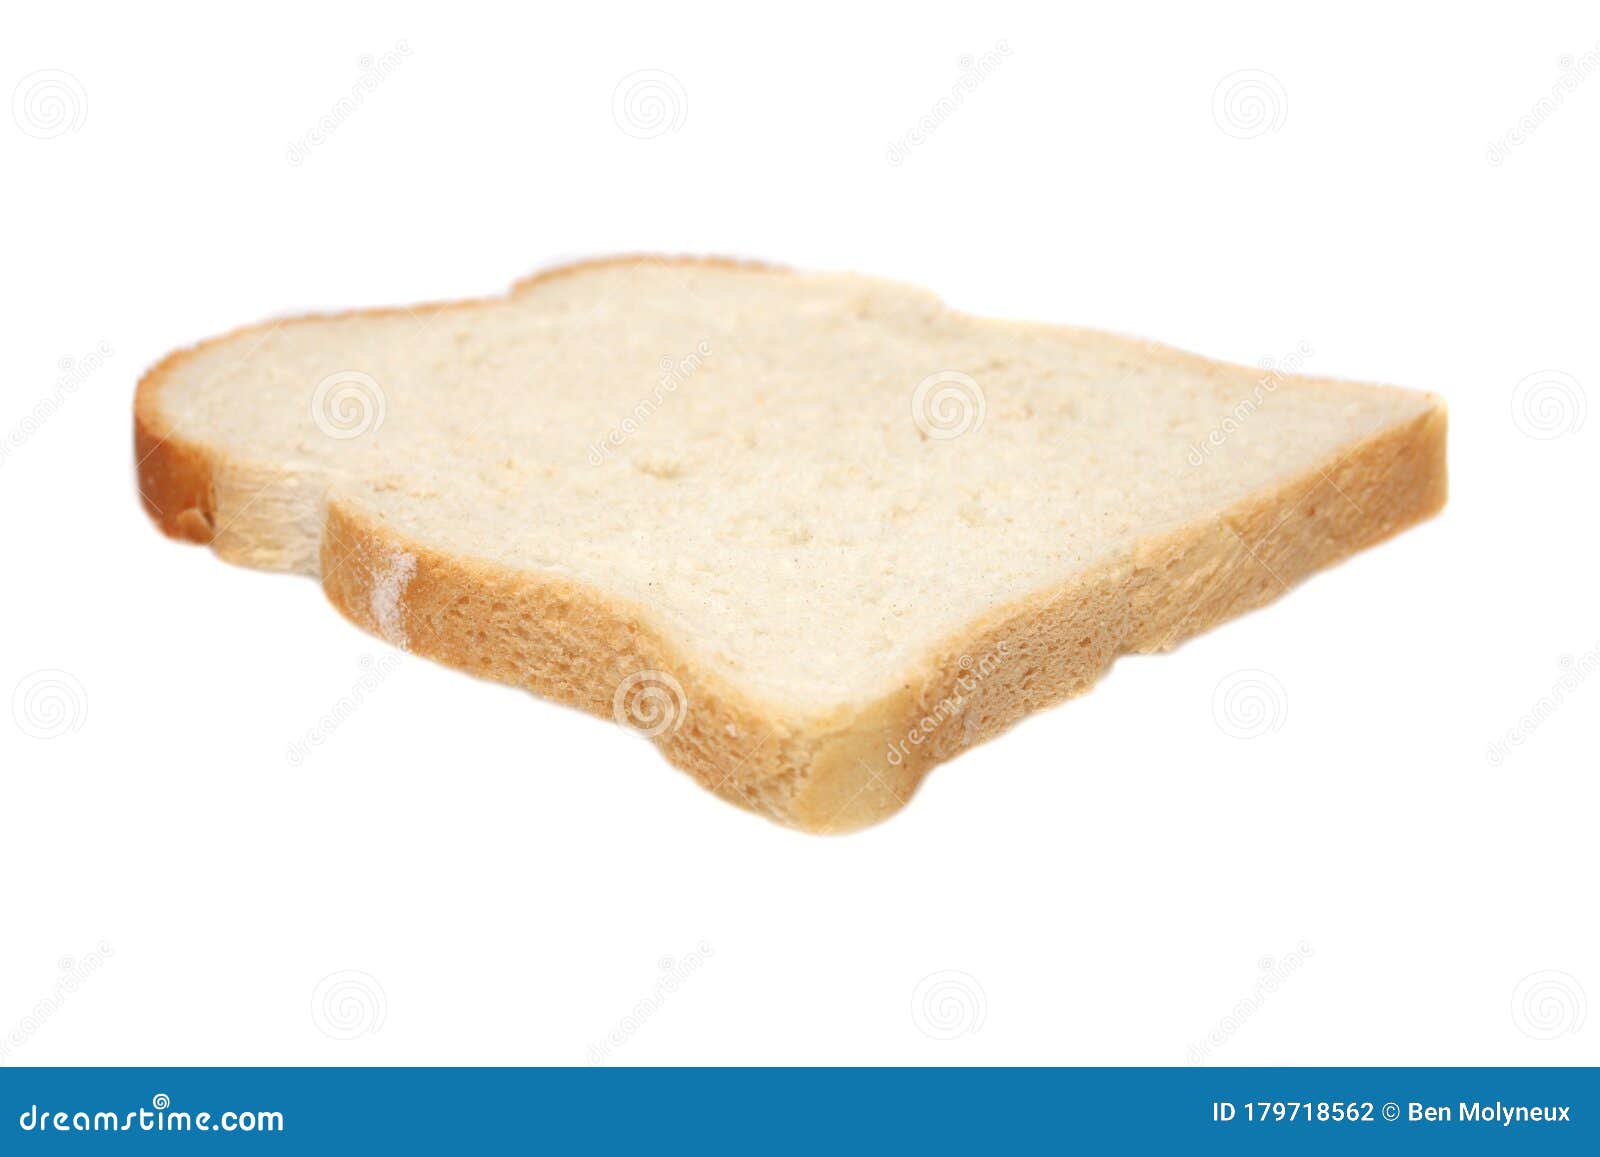 a single slice of white bread